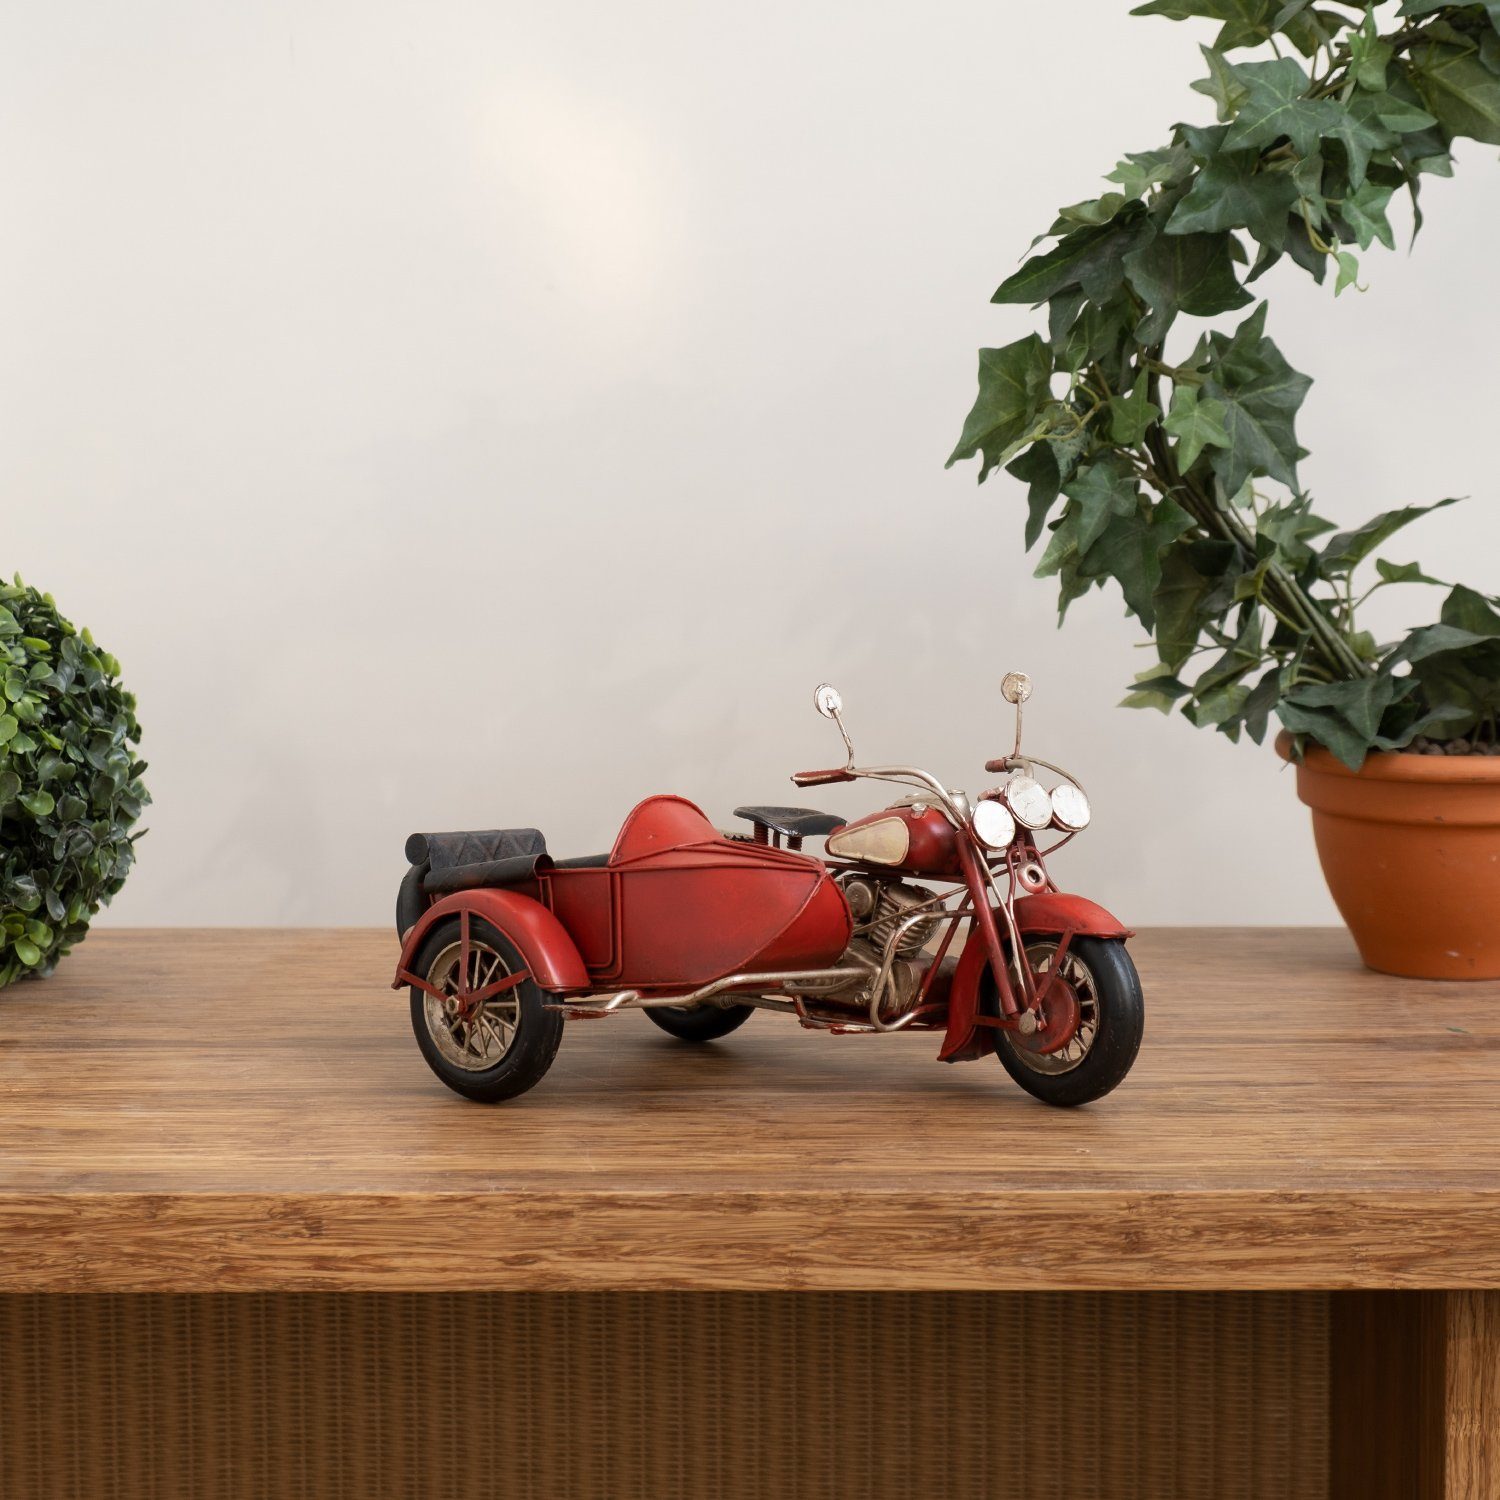 Moritz weiß, Retro Blech-Deko Motorrad mit Blechmodell Miniatur rot Antik-Stil Nachbildung Dekoobjekt Modell Beiwagen Nostalgie